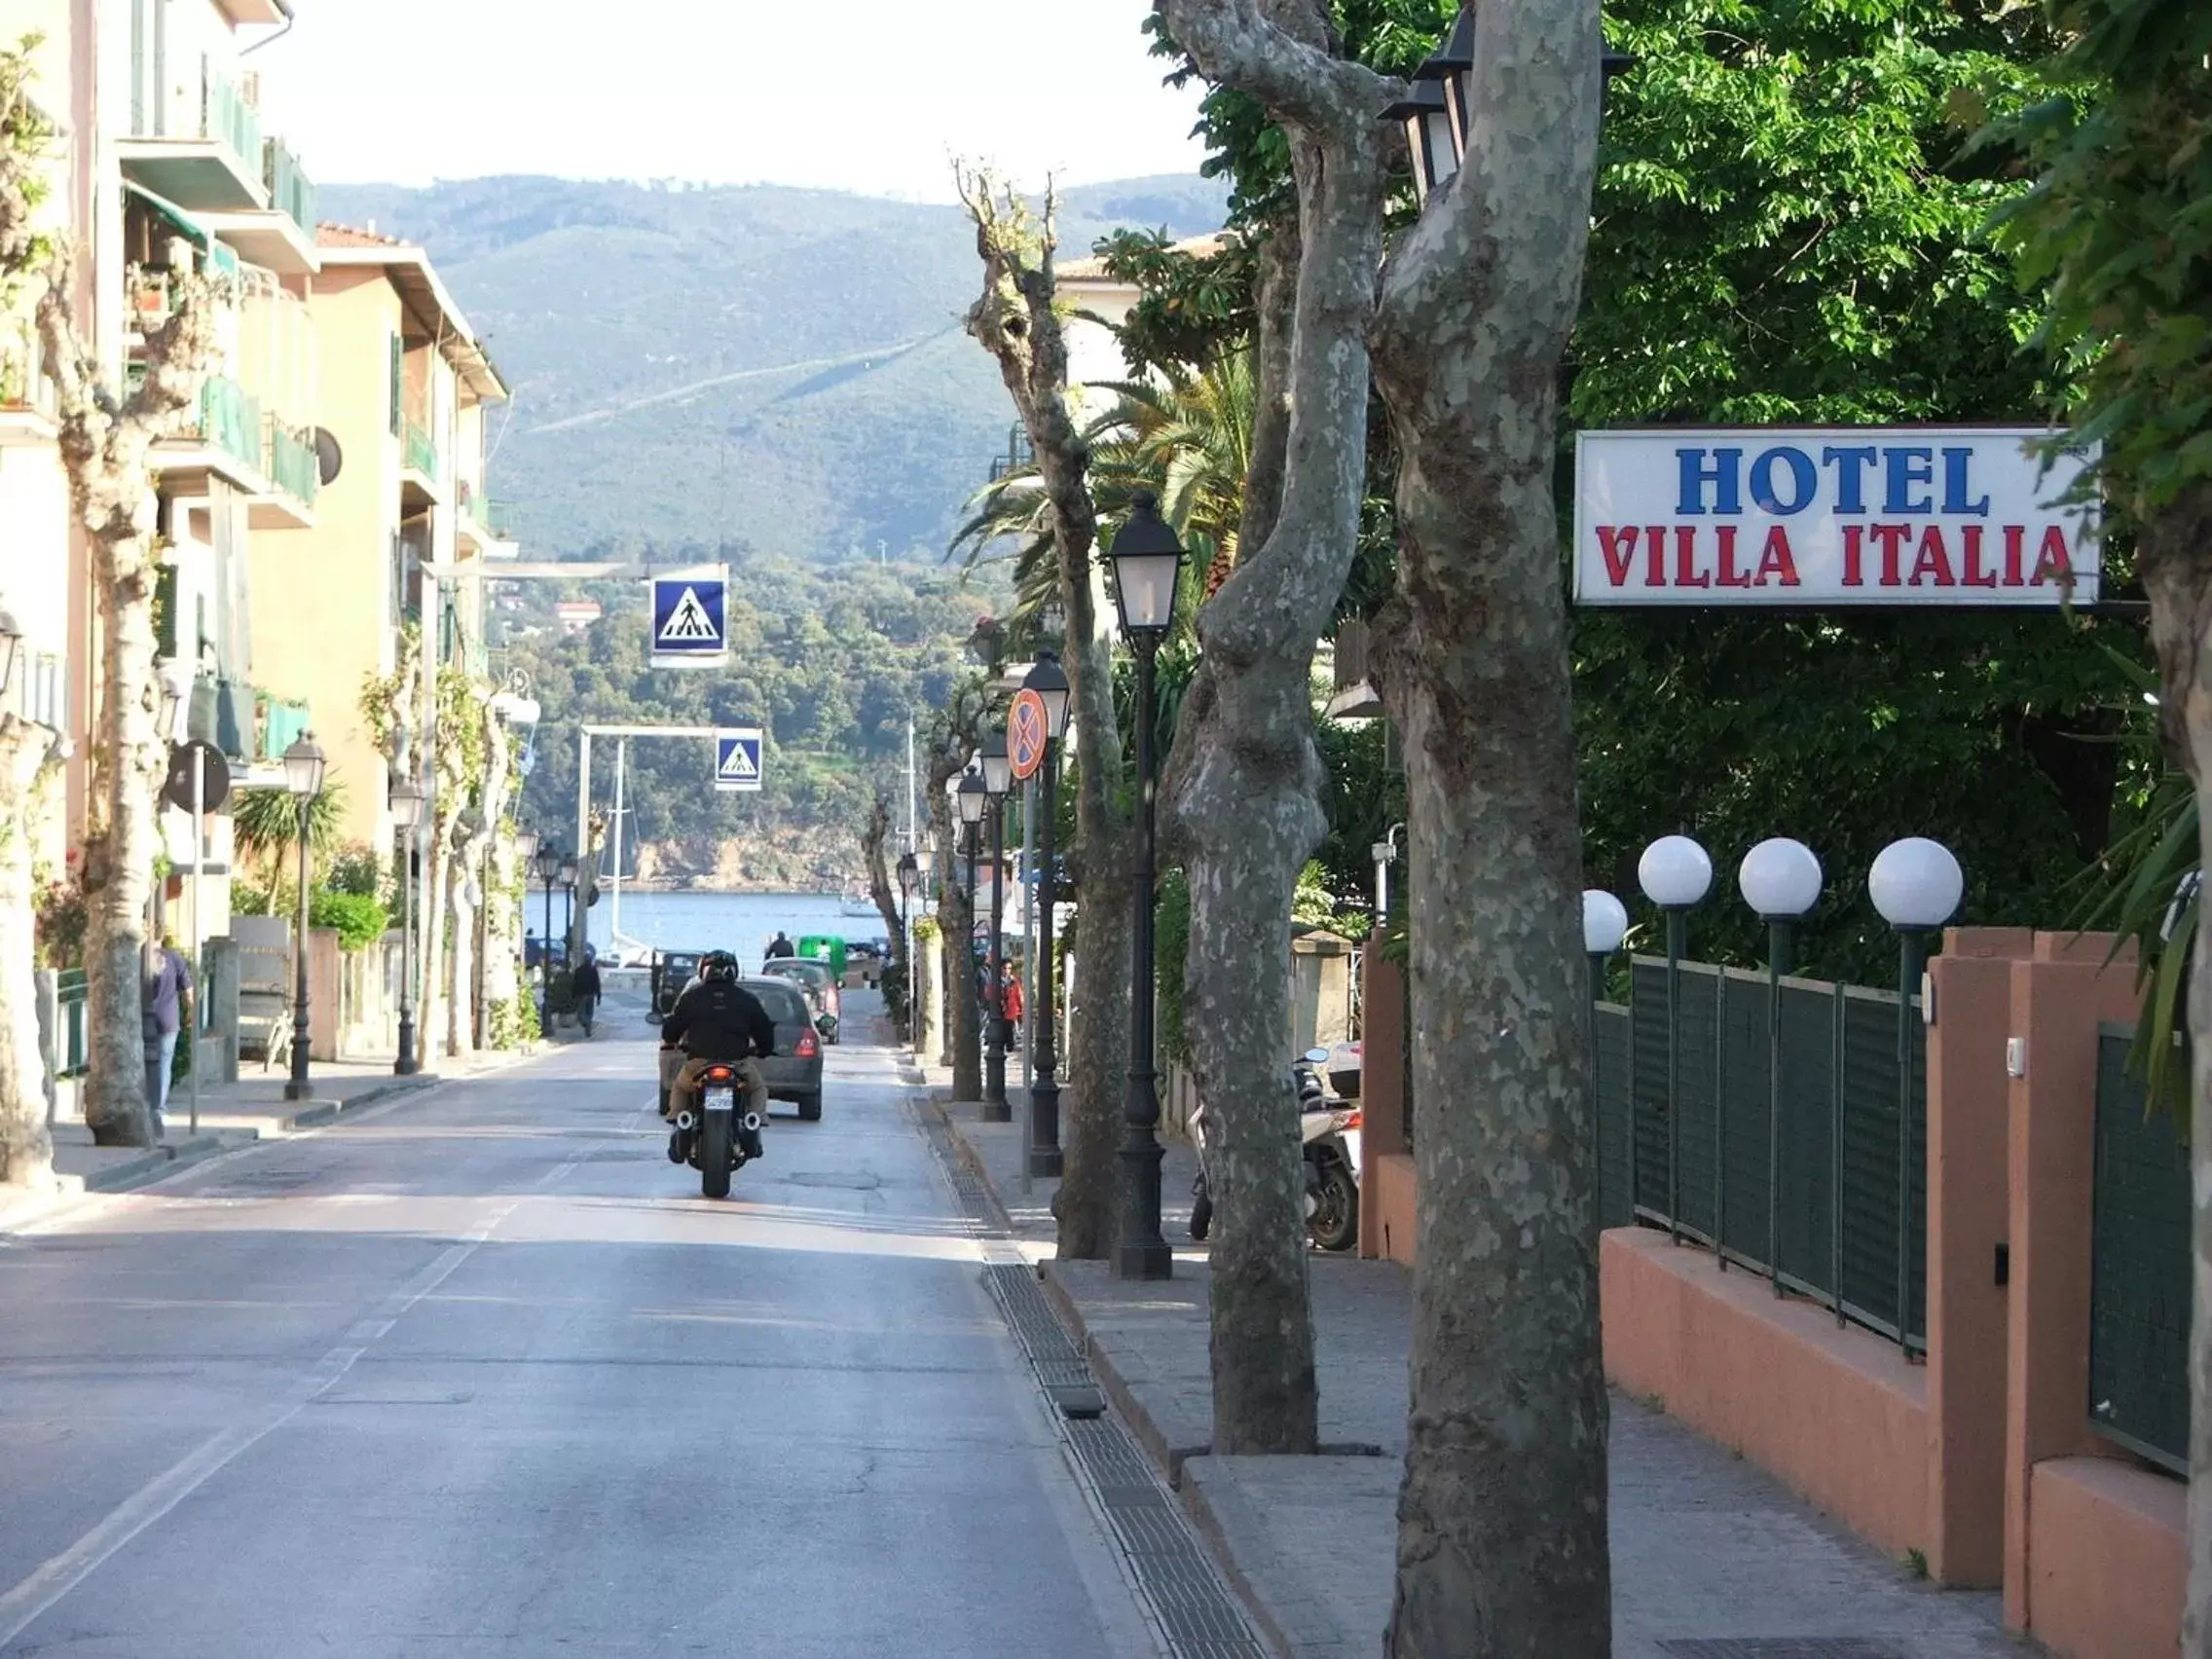 Street view in Hotel VILLA ITALIA